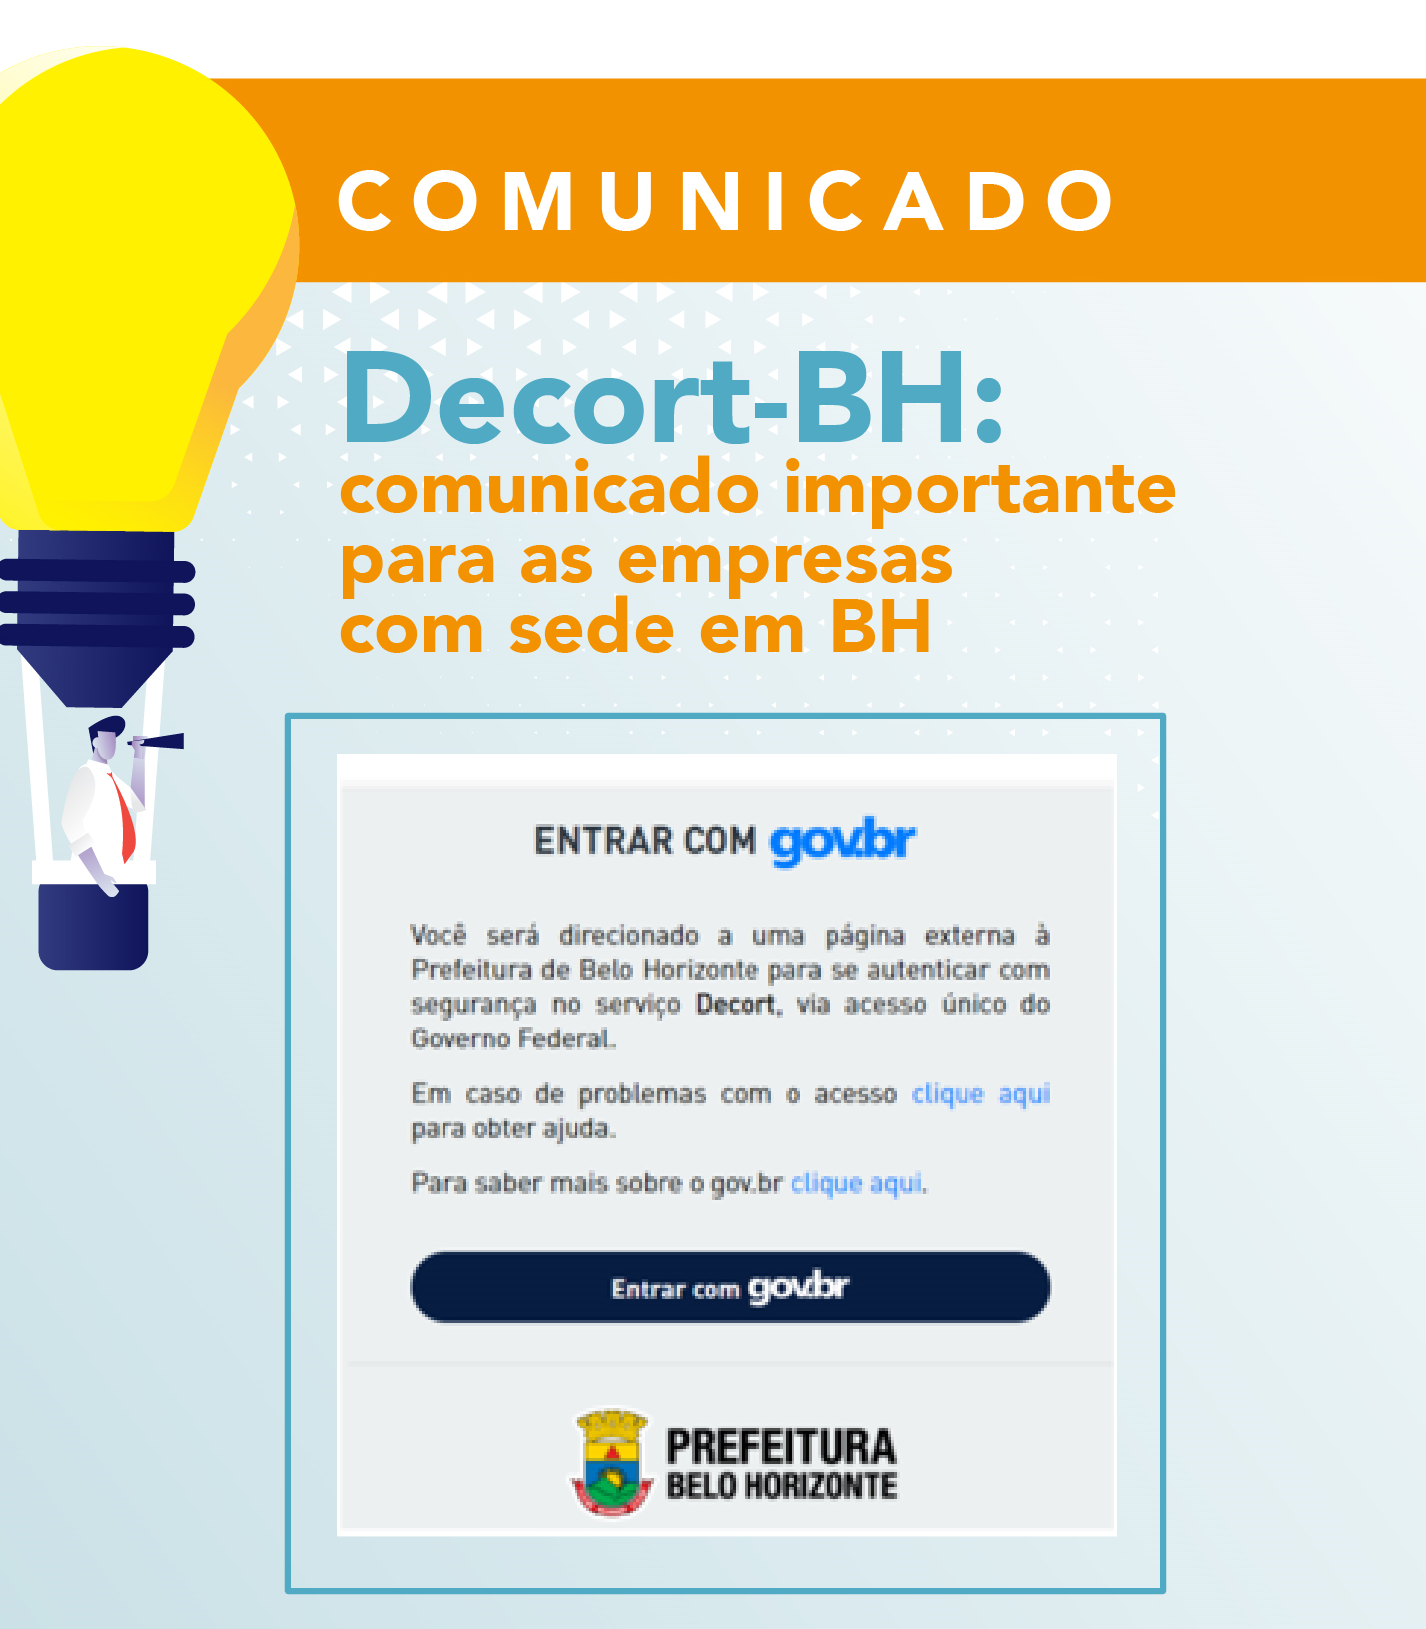 Credenciamento no Domicílio Eletrônico dos Contribuintes e Responsáveis Tributários de Belo Horizonte – Decort-BH